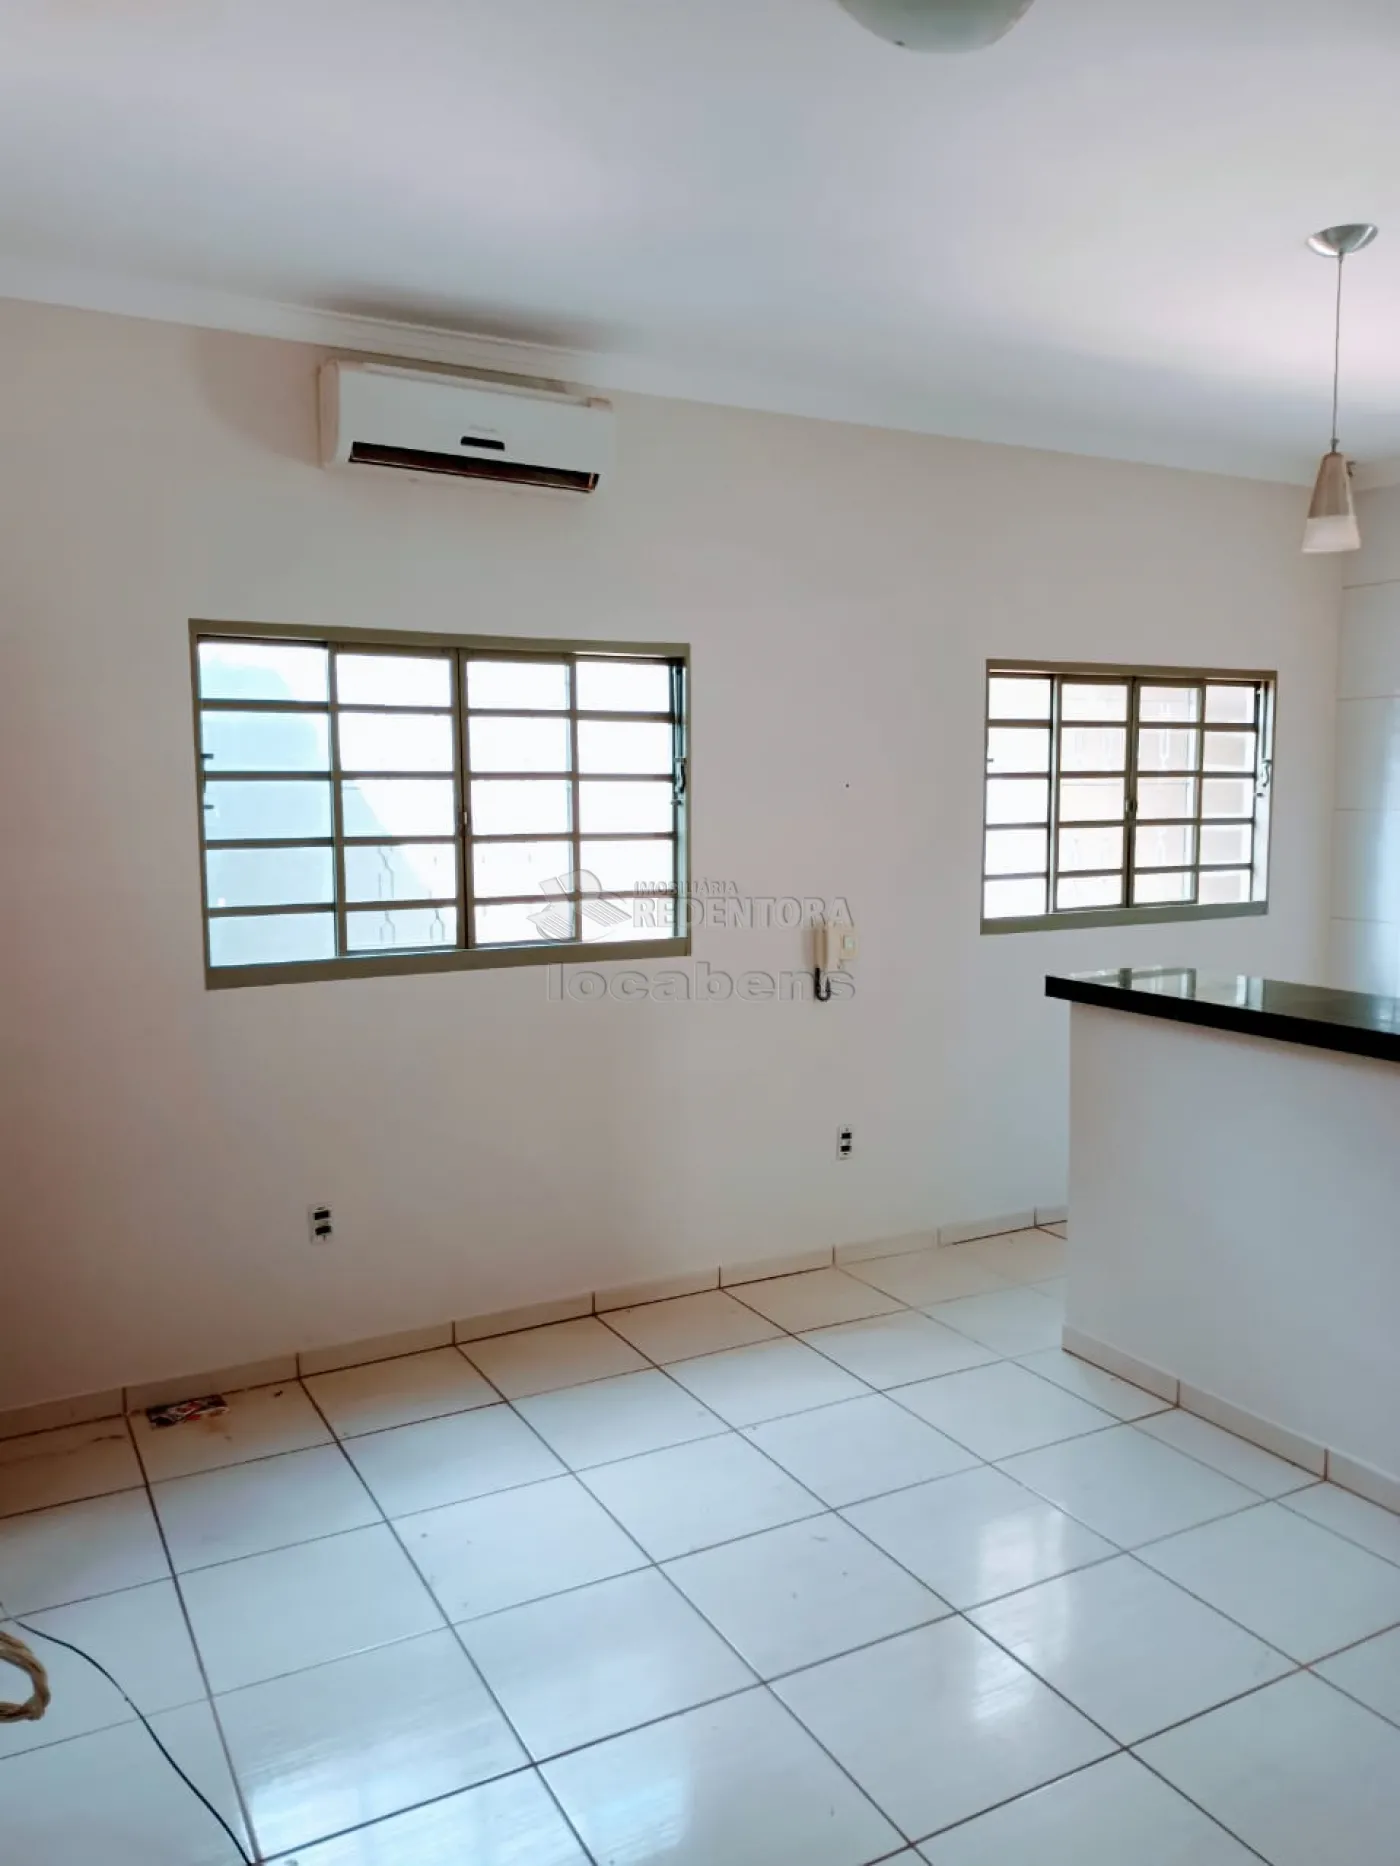 Comprar Casa / Padrão em São José do Rio Preto apenas R$ 325.000,00 - Foto 11